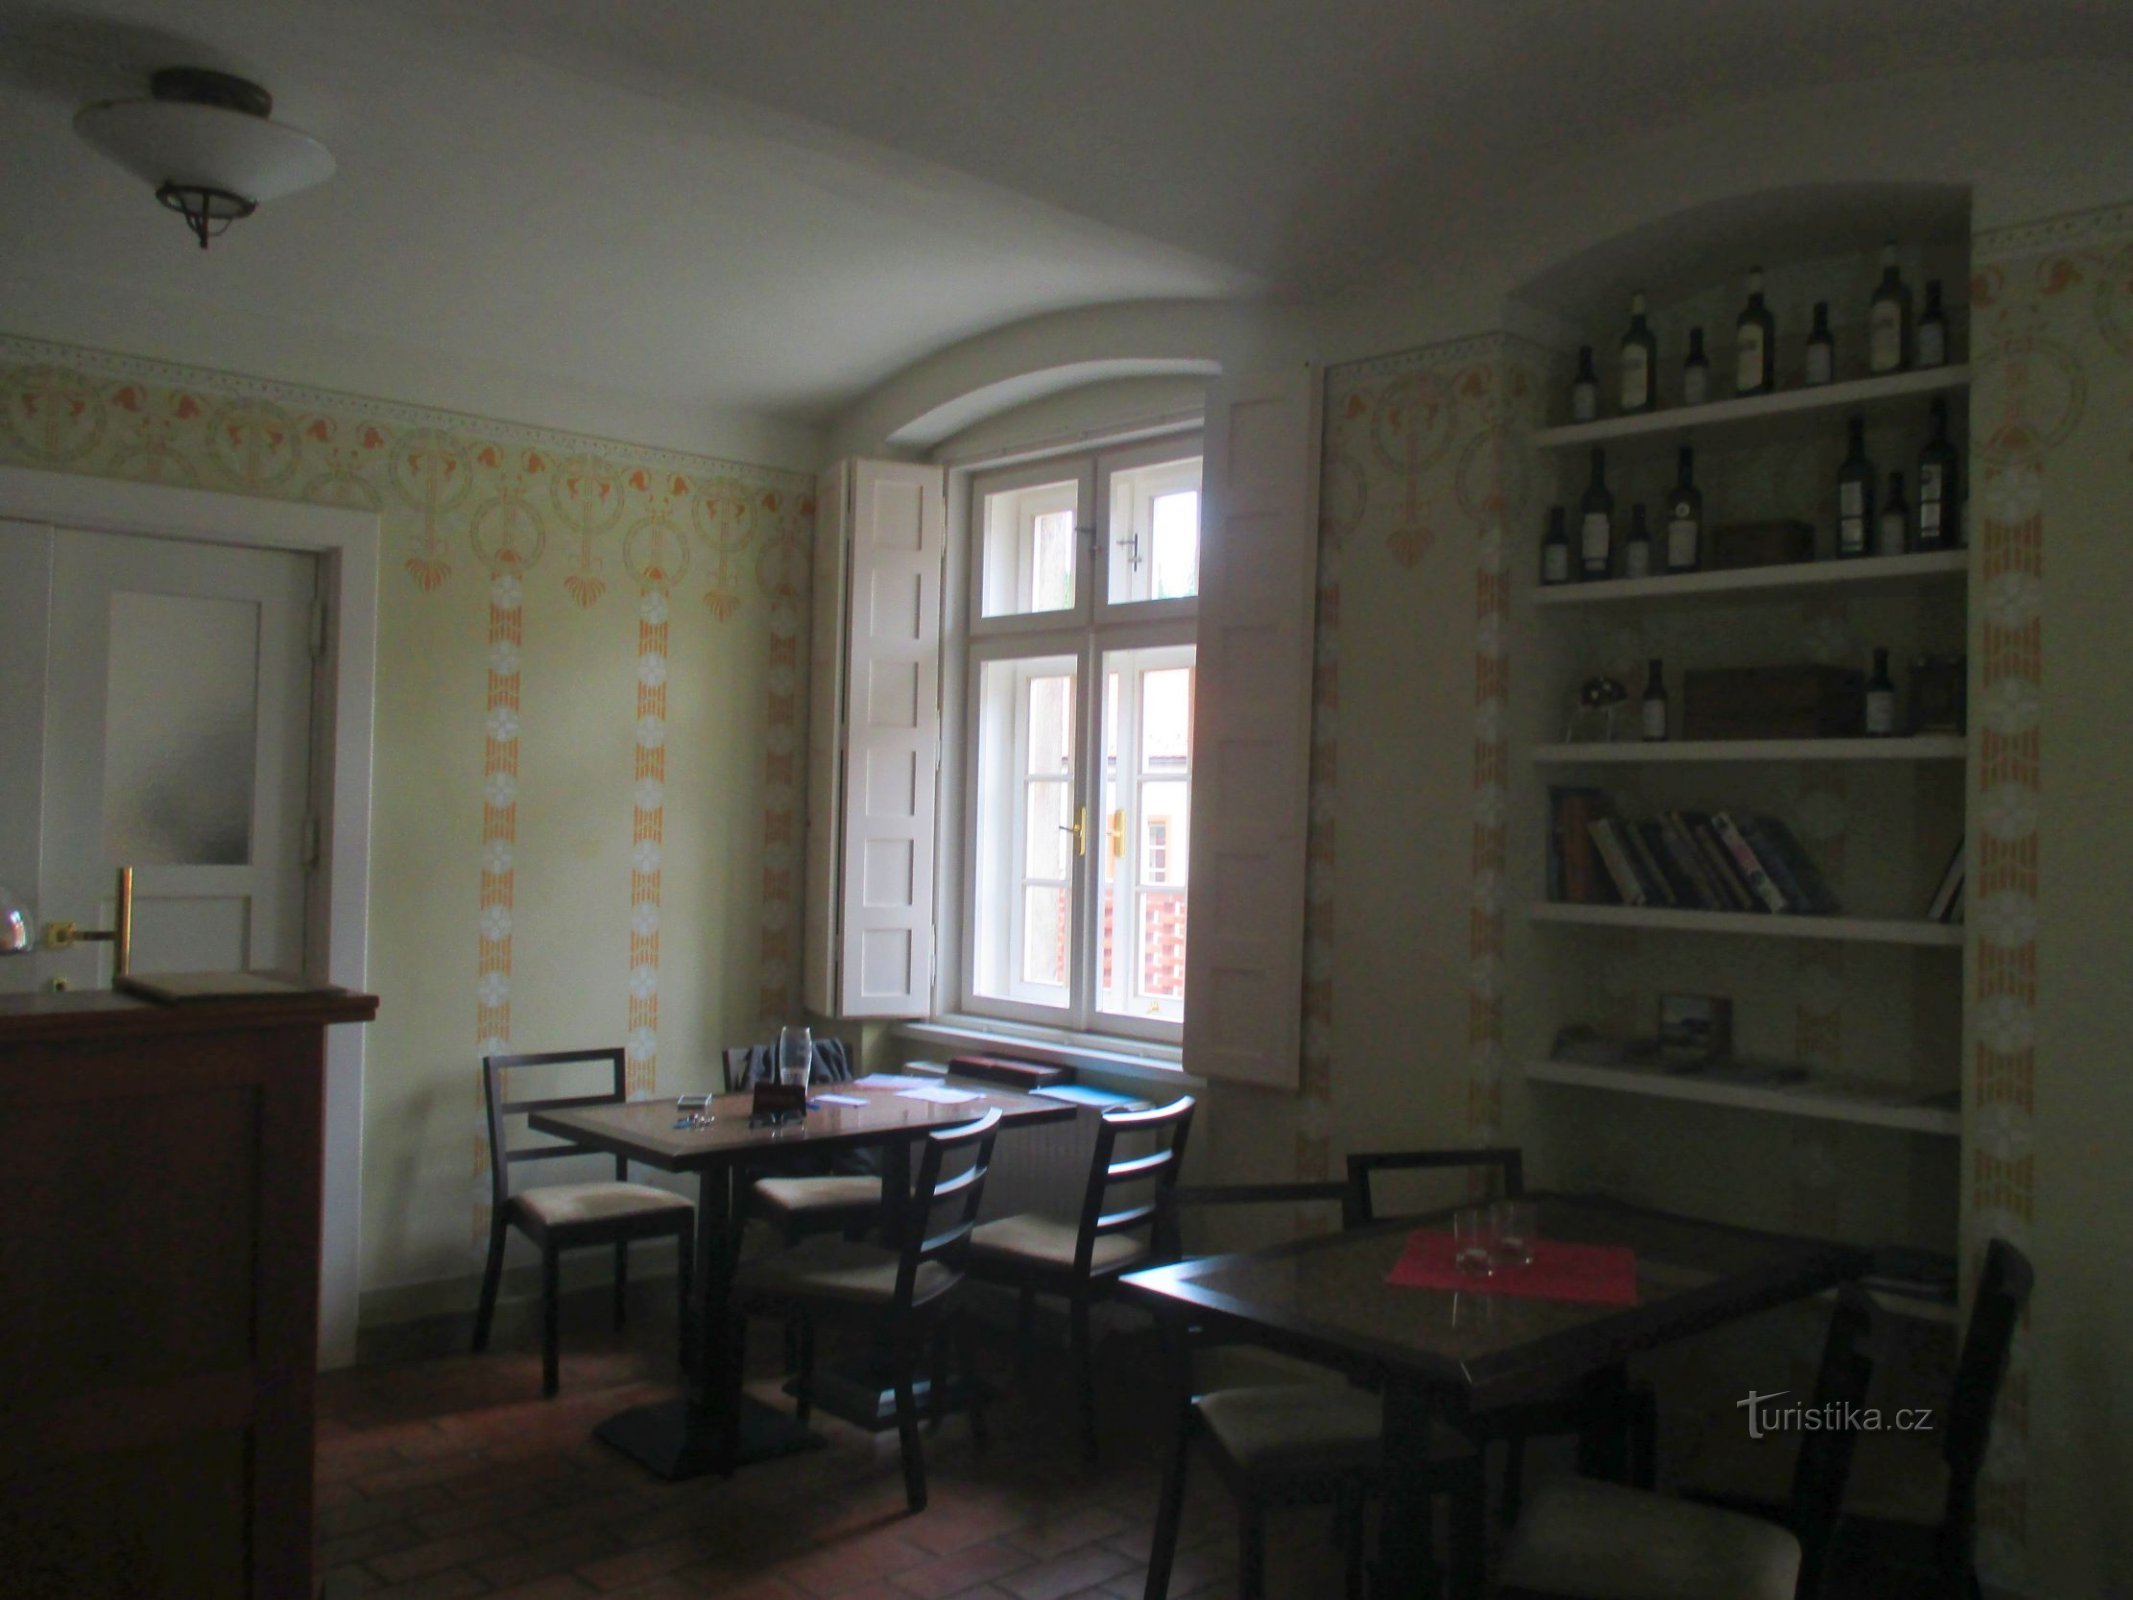 Το Synagogue Café βρίσκεται σε διαμέρισμα πρώην ραβίνου με πιστά ανακαινισμένο εσωτερικό.